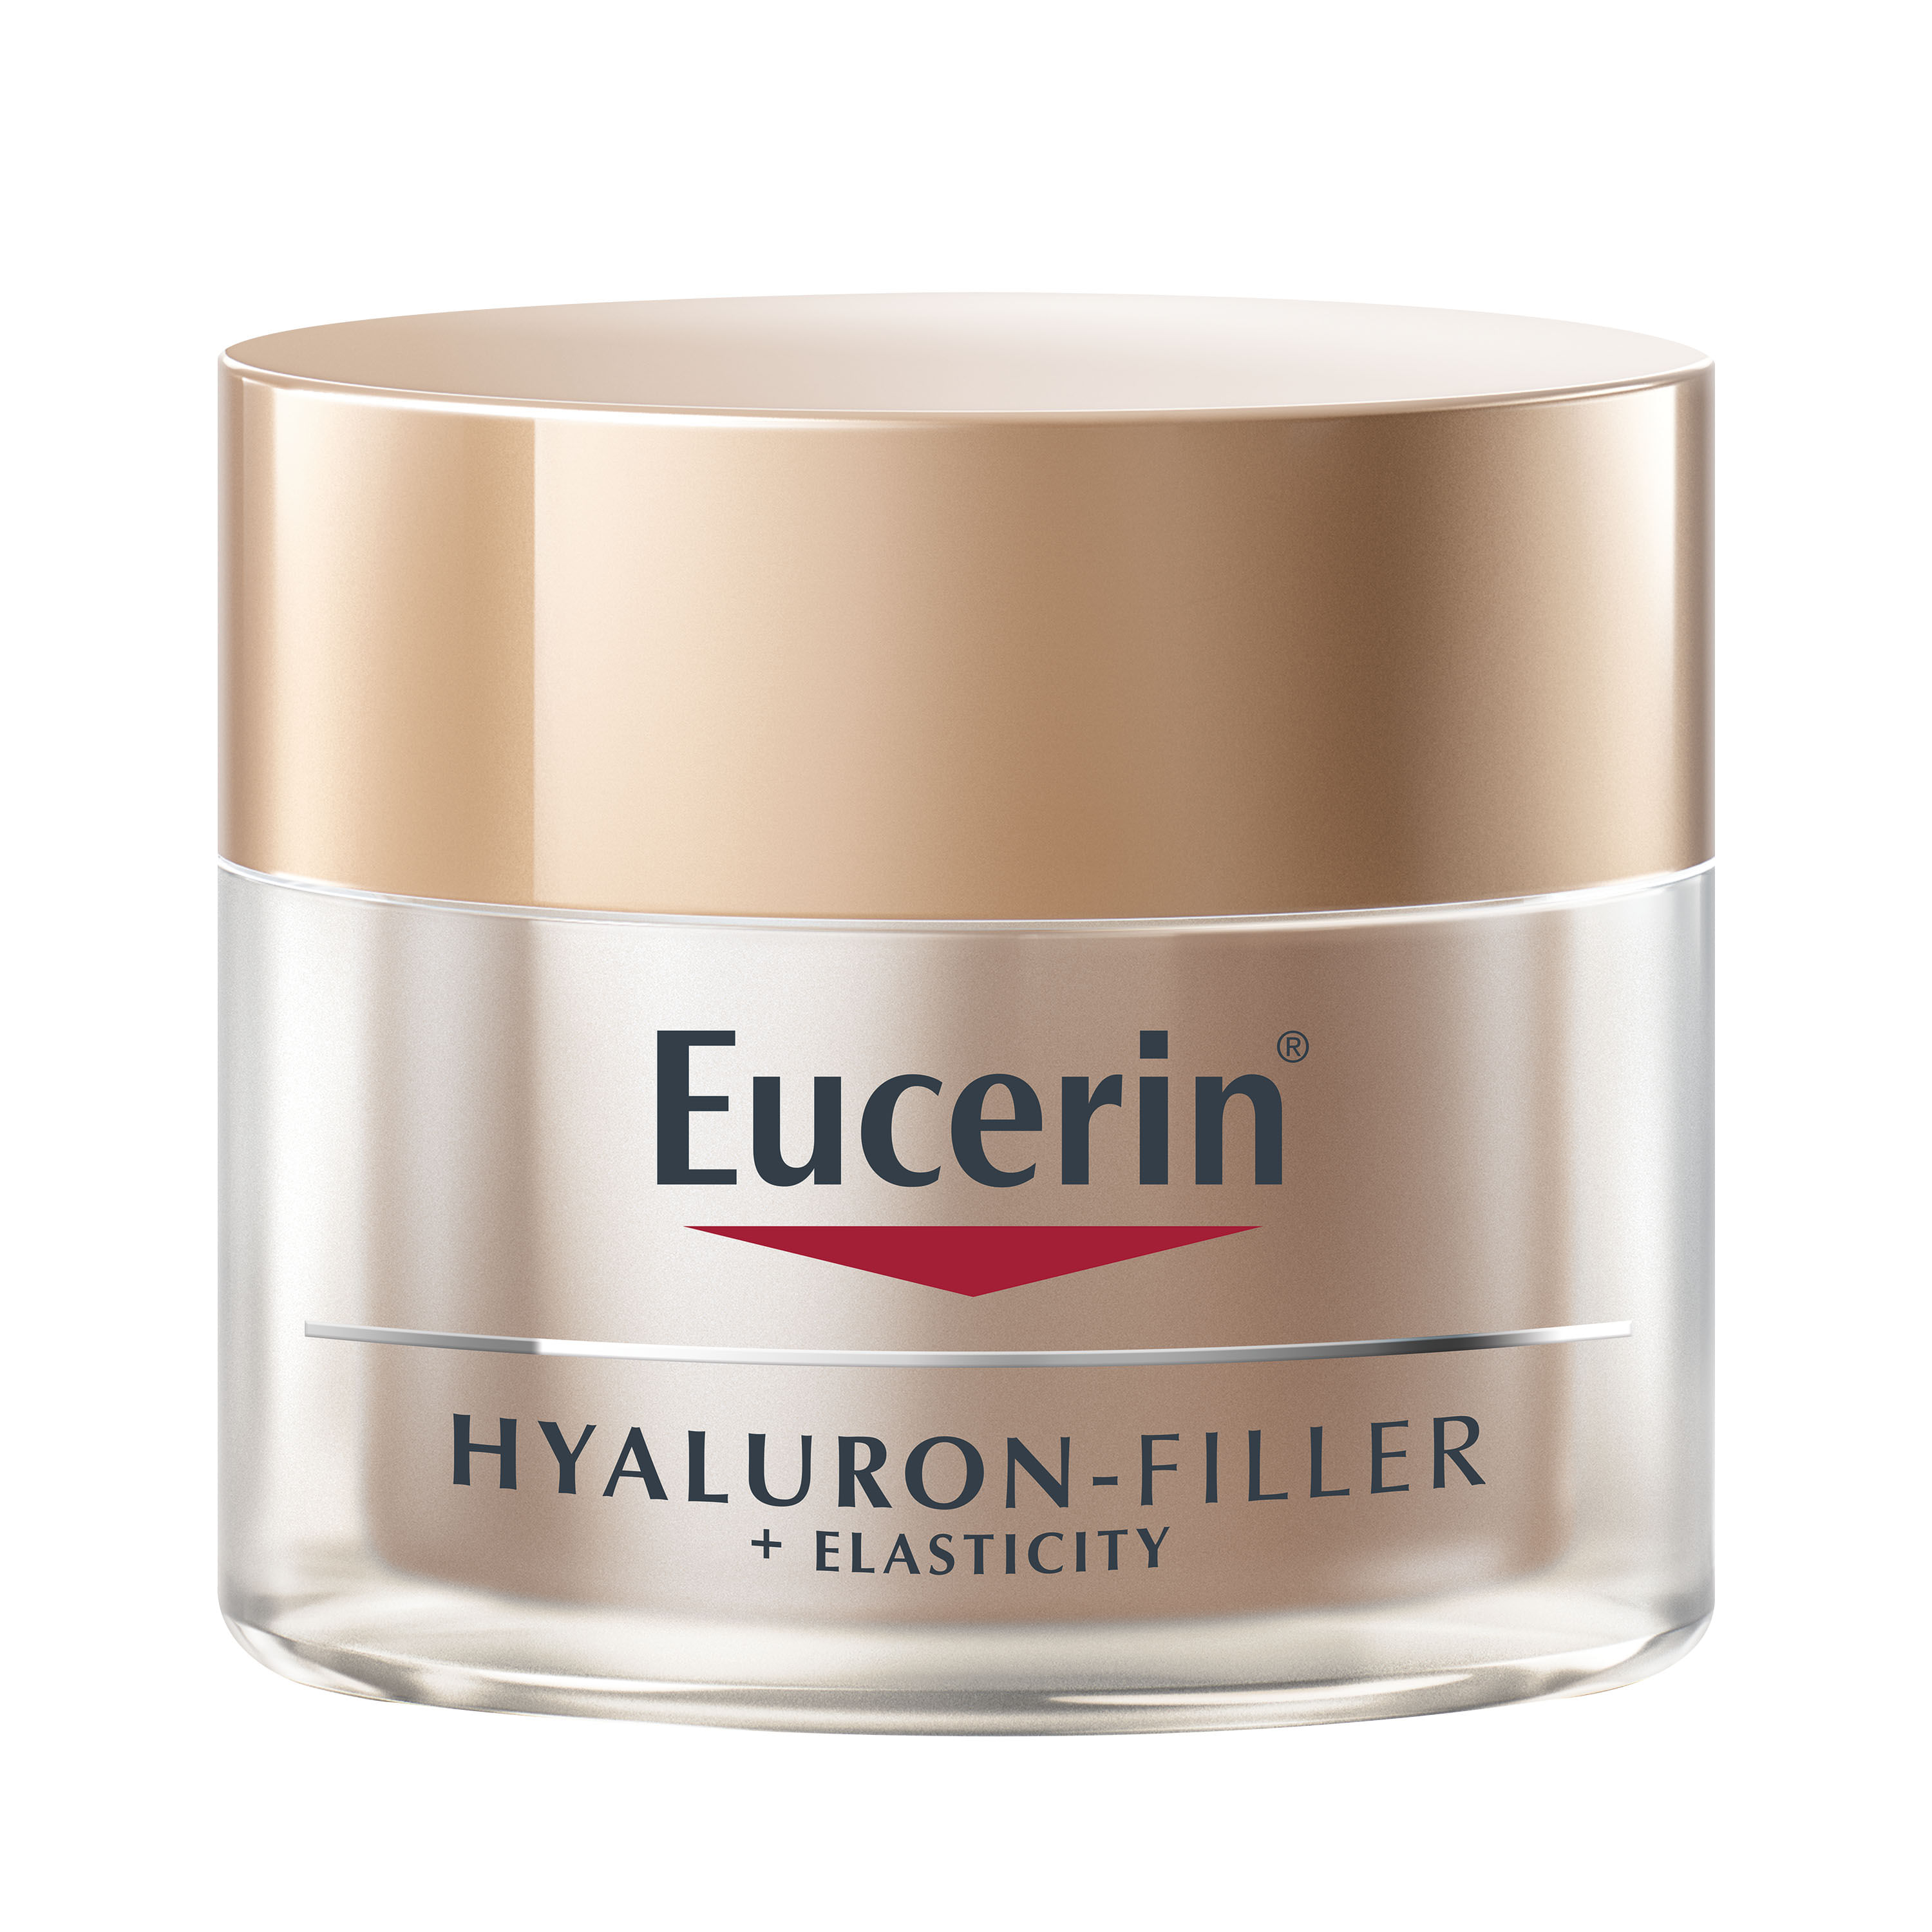 Crema-Facial-Eucerin-Hyaluron-Filler-Elasticity-Noche-50ml-1-16492